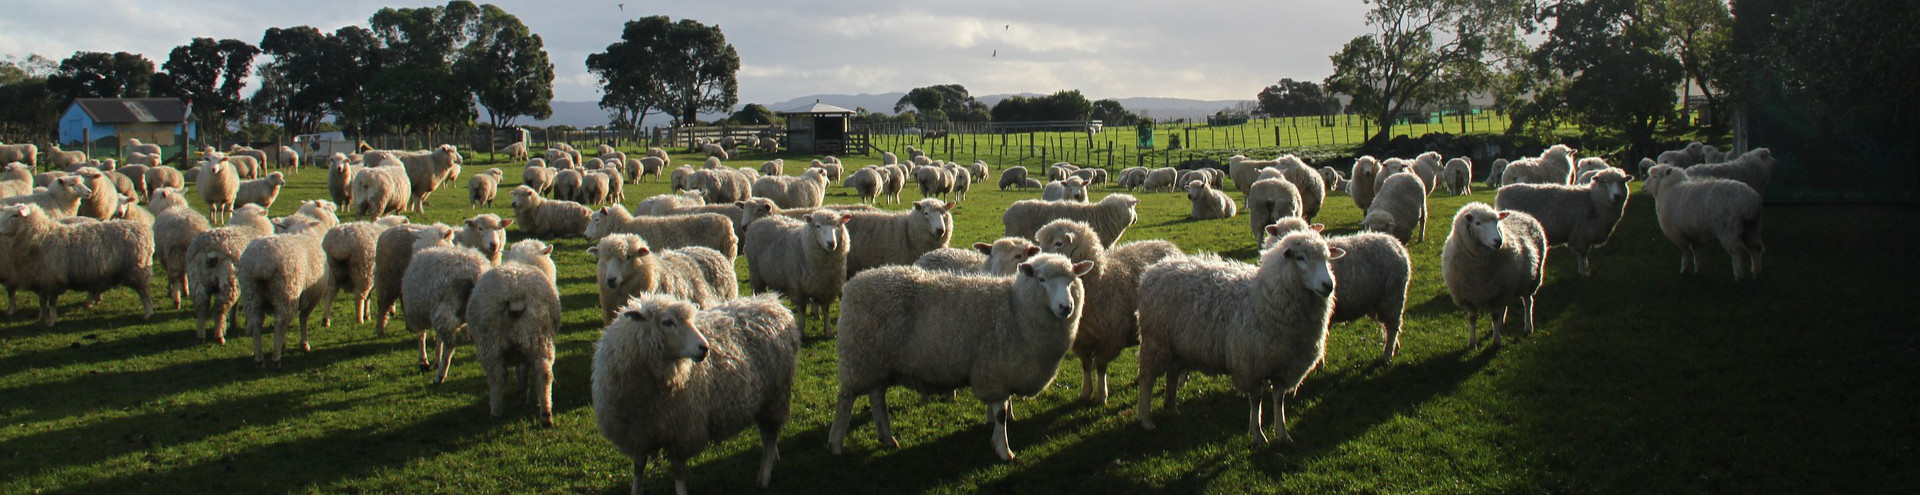 sheeps 1761921 1920